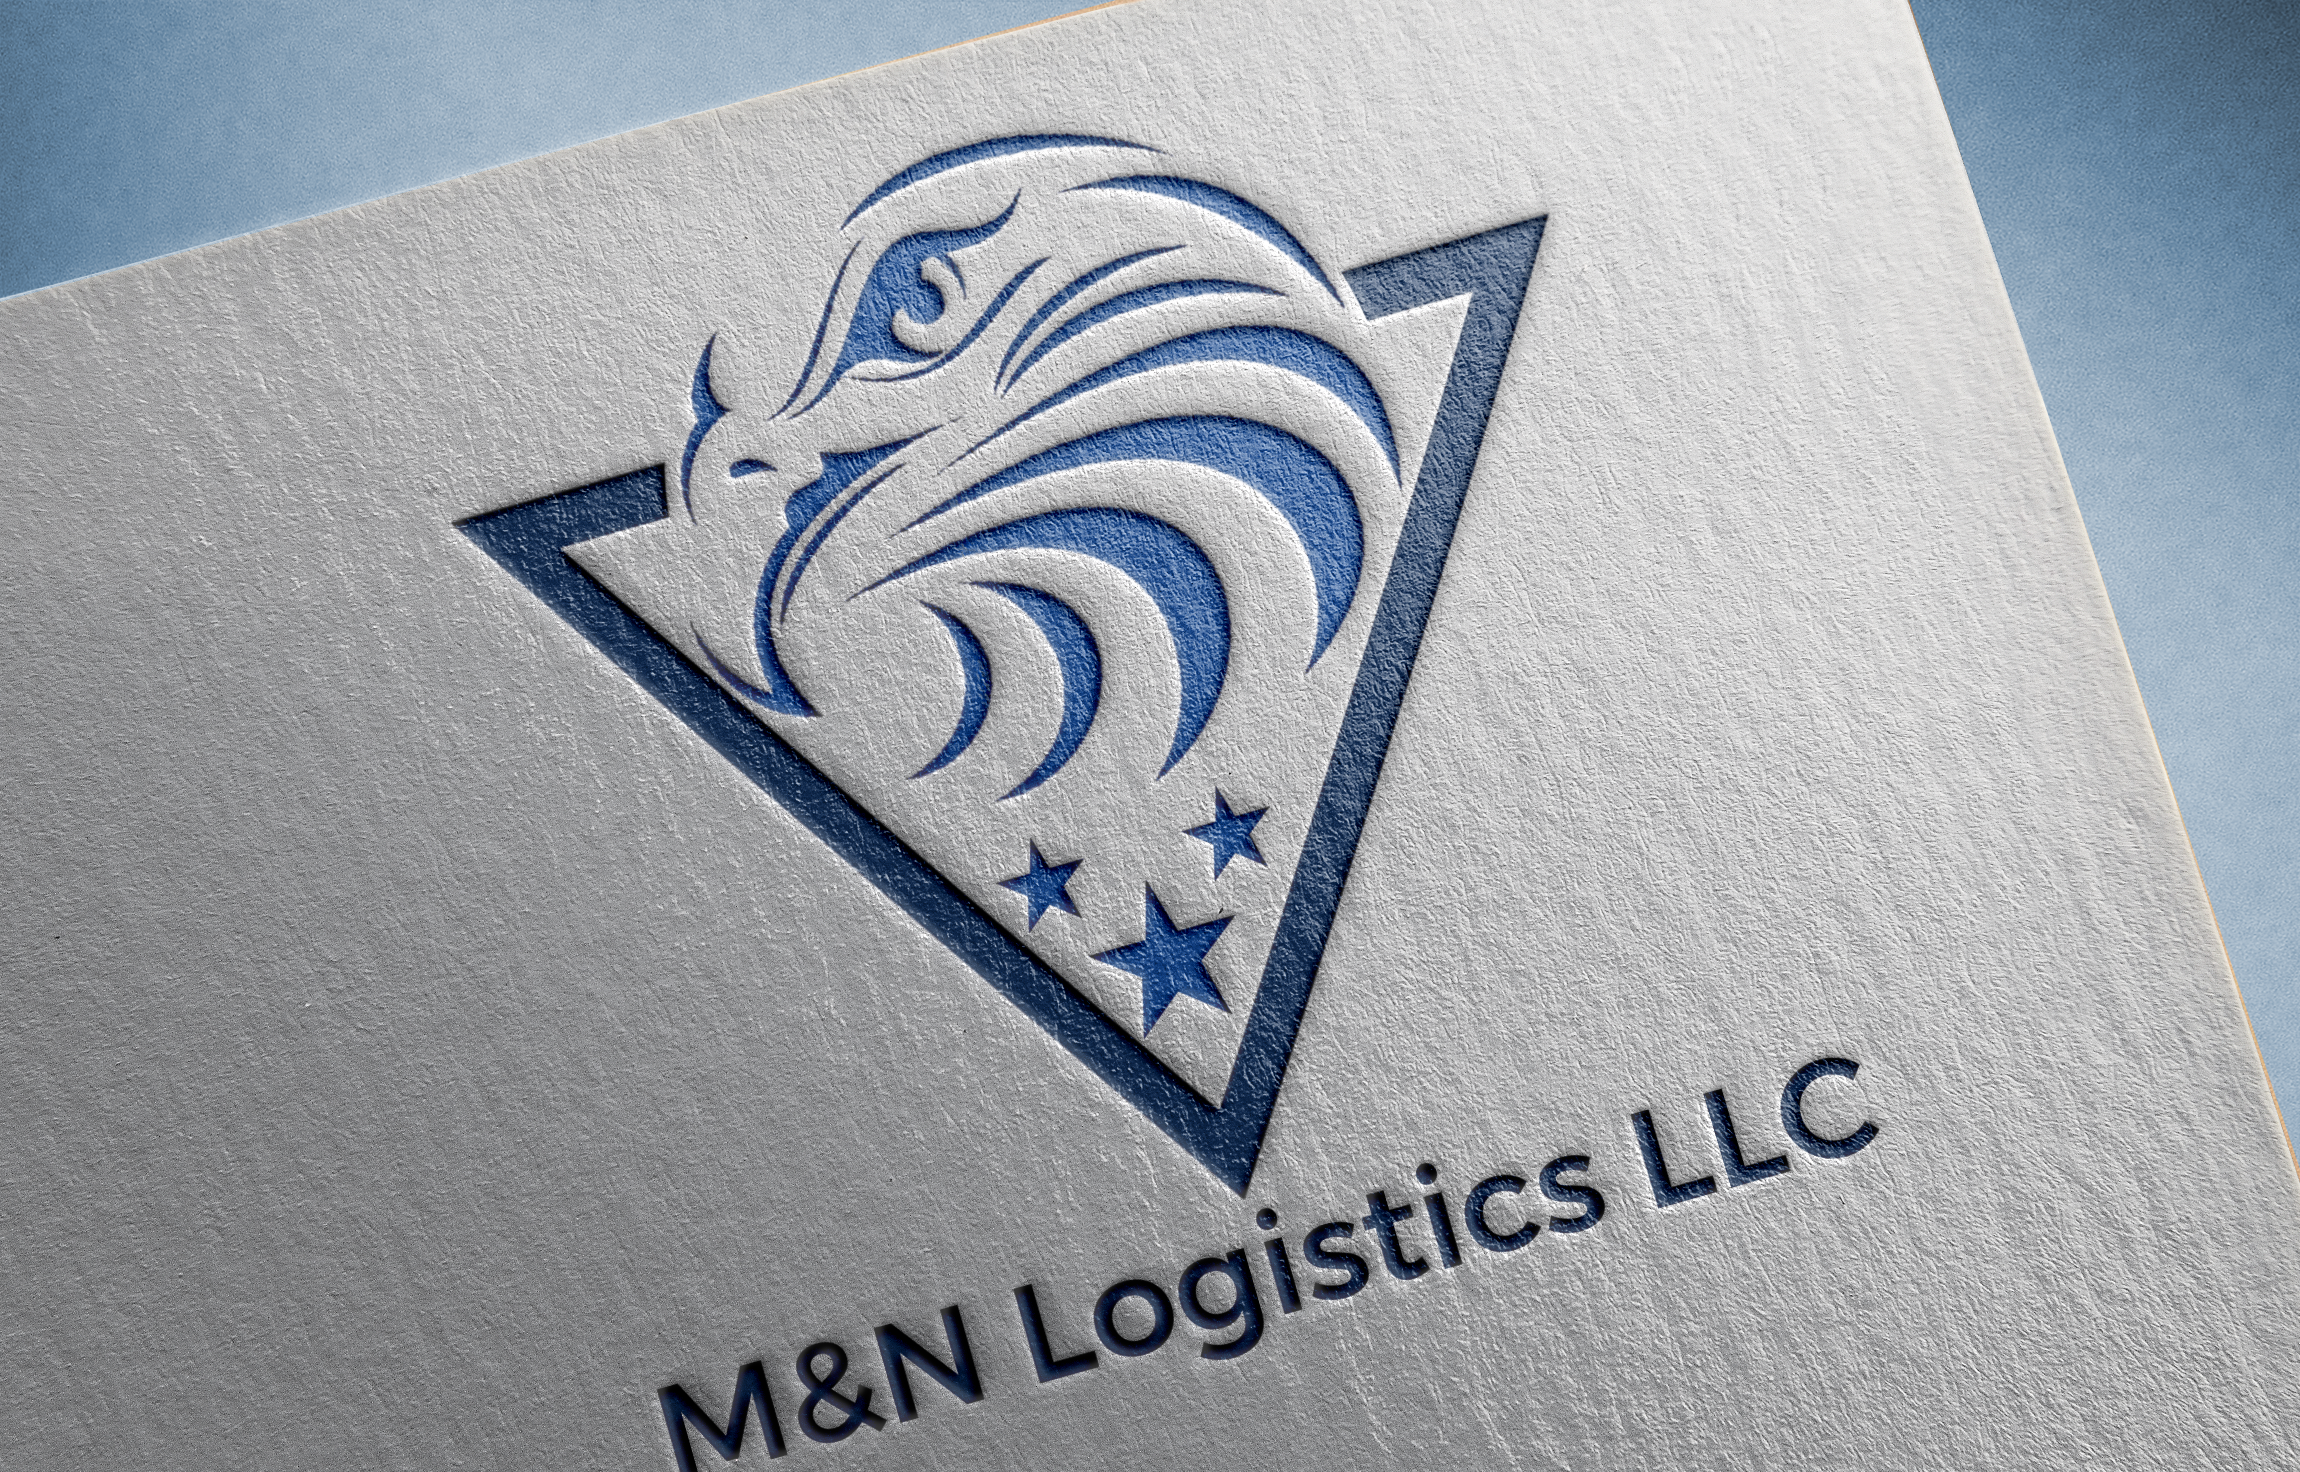 M&N Logistics